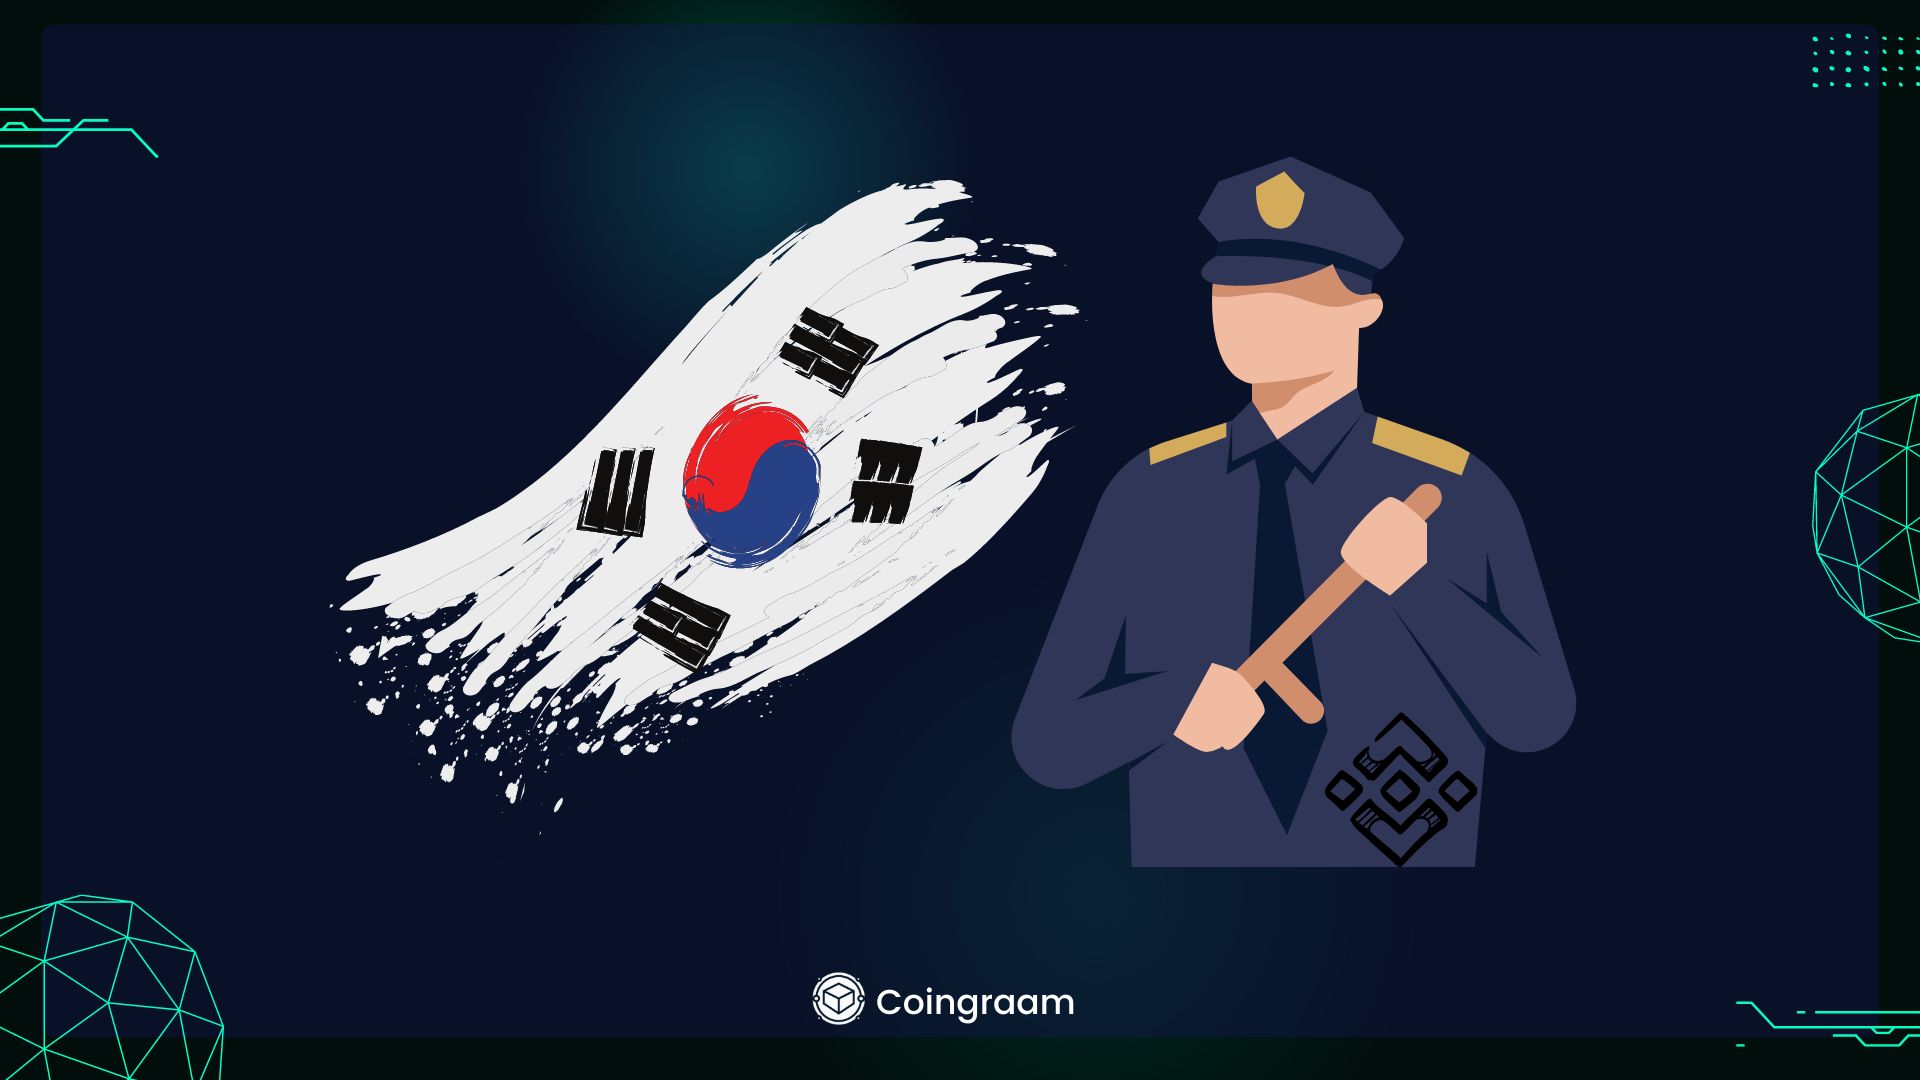 همکاری بایننس با پلیس کره جنوبی

